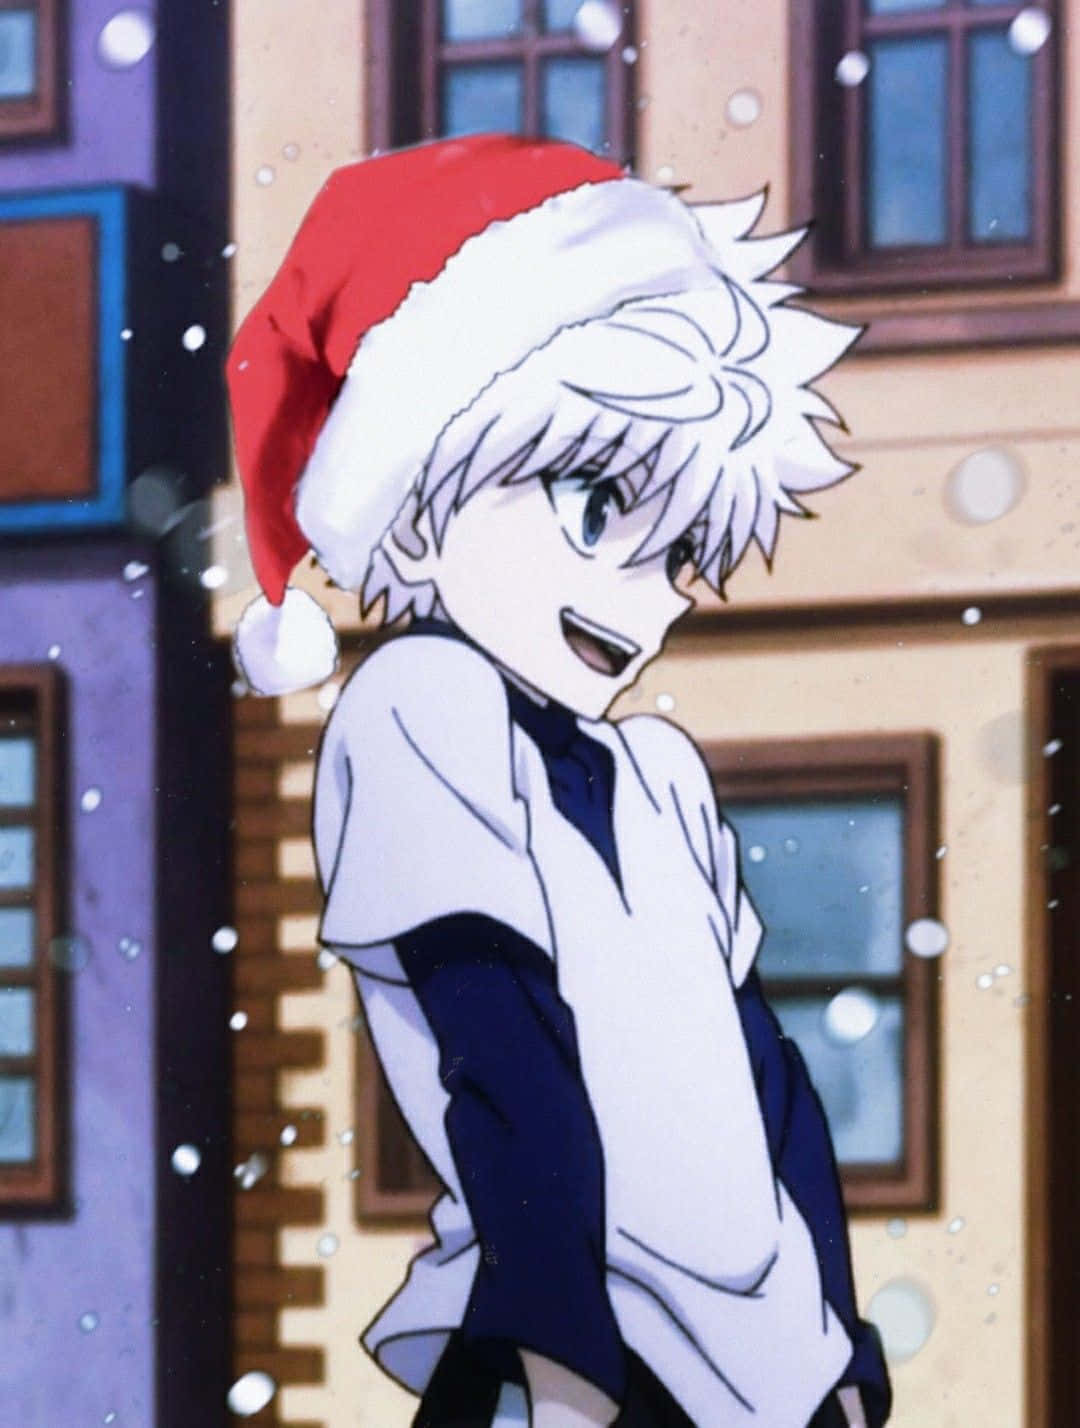 Dosniños Disfrazados De Santa Claus Y Duendes En Una Acogedora Escena De Anime Navideño. Fondo de pantalla